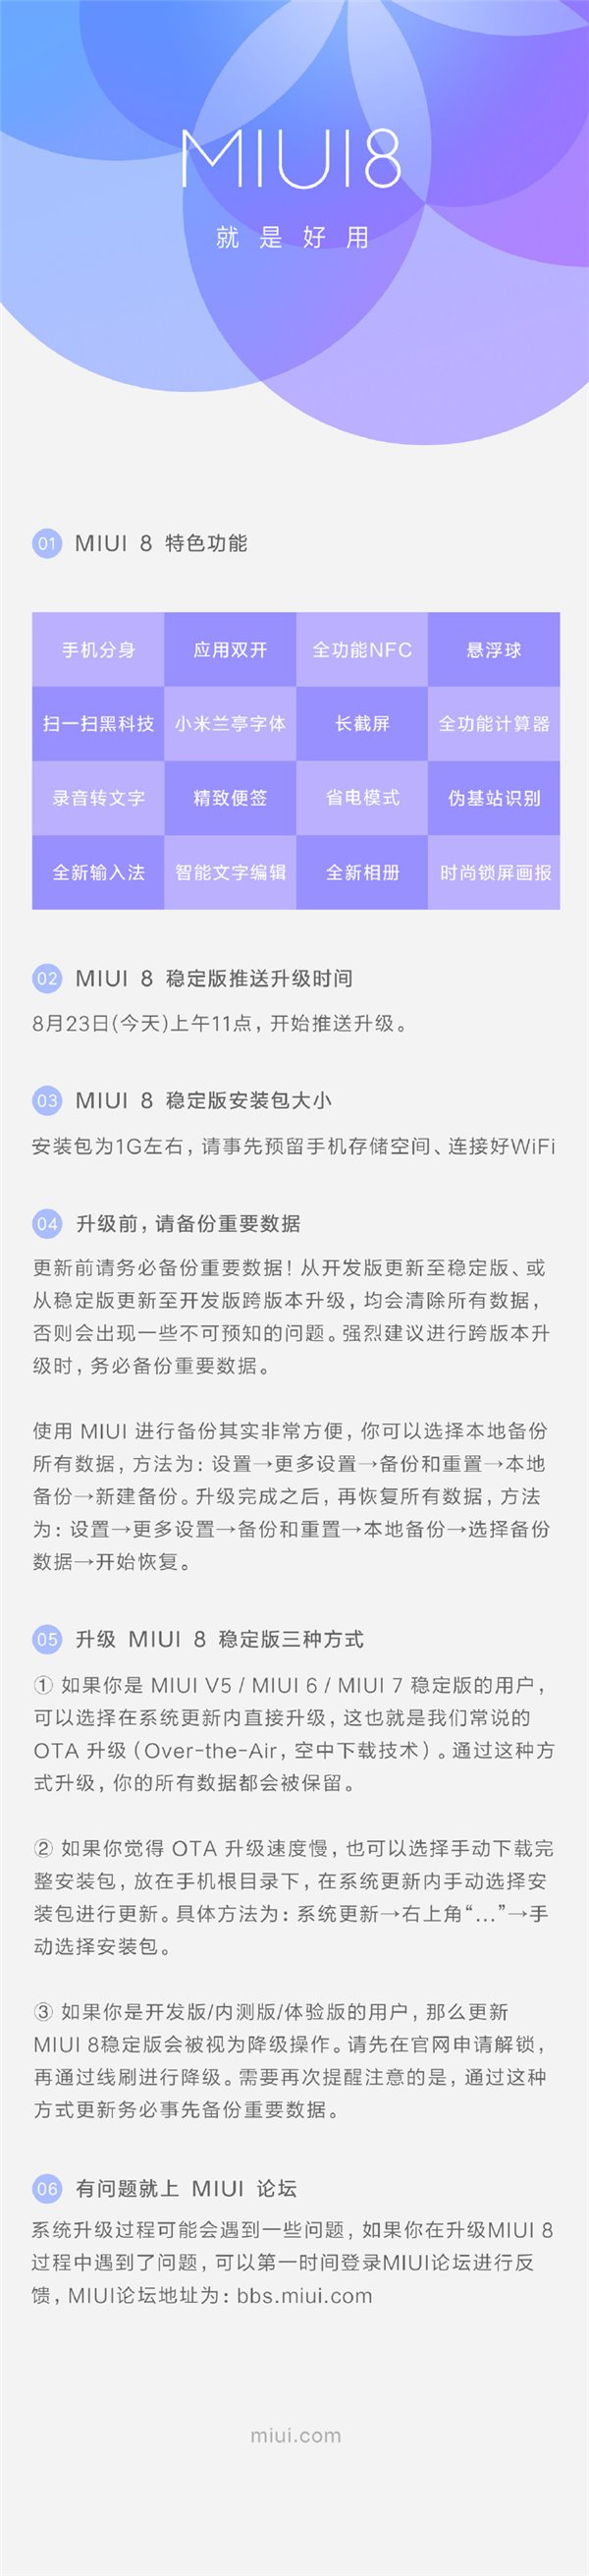 MIUI8稳定版怎么升级 小米放出MIUI8稳定版升级攻略